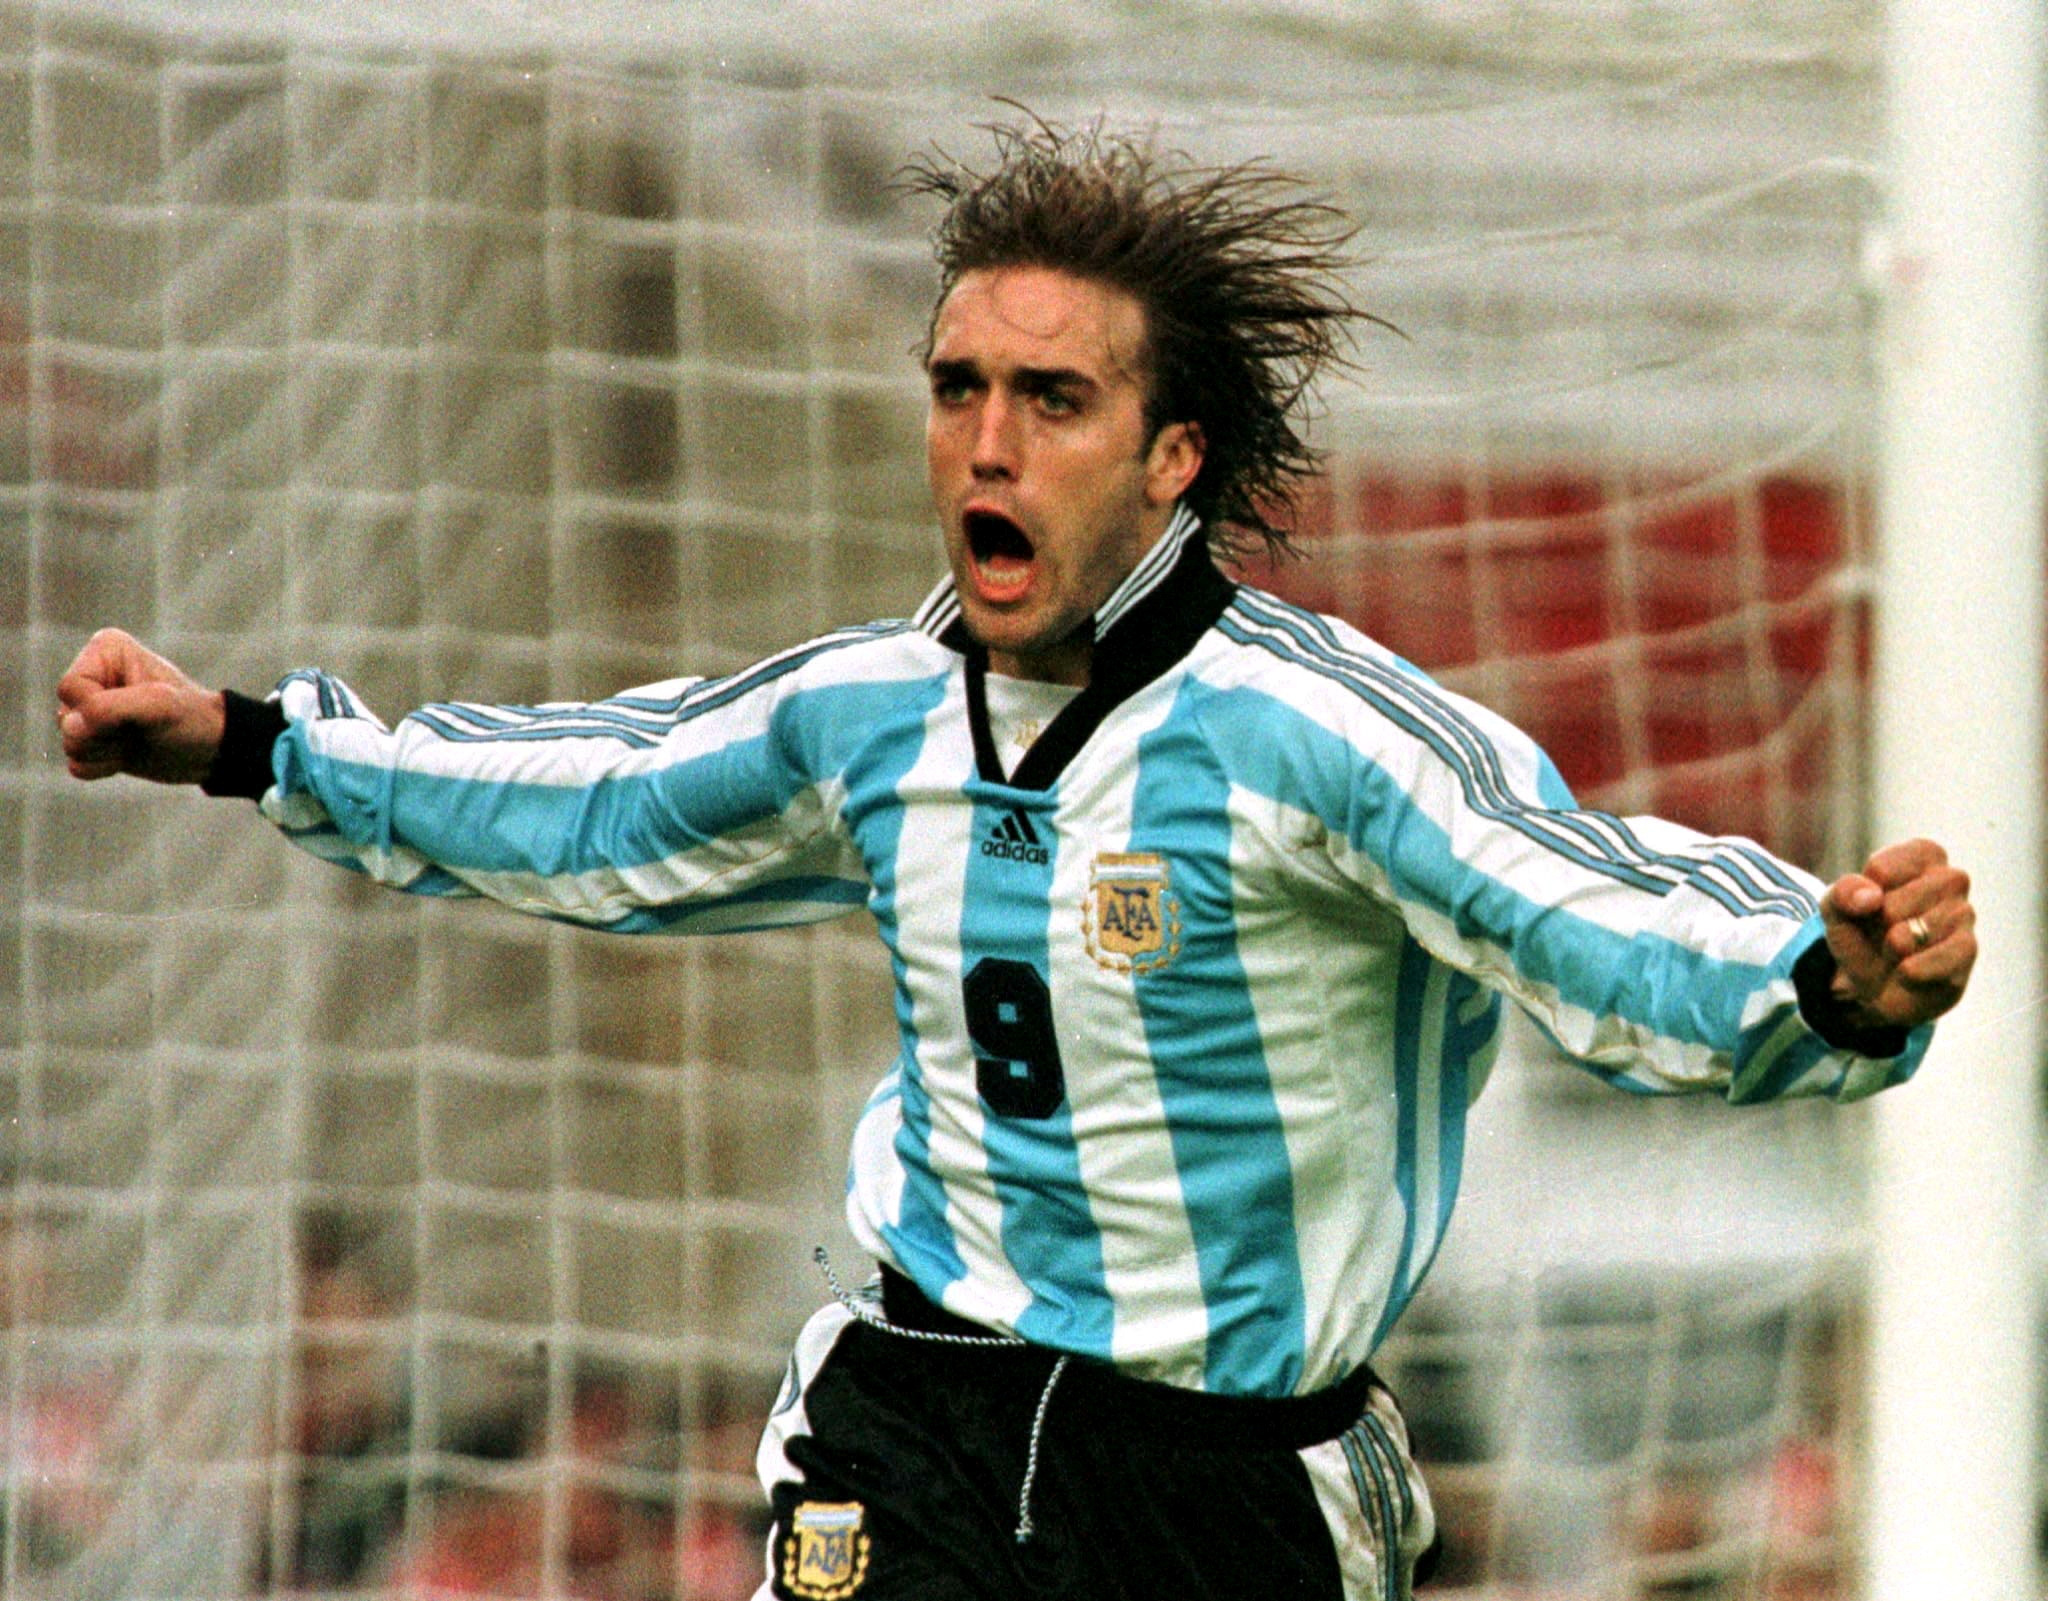 El Bati, con 10 goles, era el máximo goleador de Argentina en Mundiales hasta esta edición: Messi lo superó con 13 anotaciones